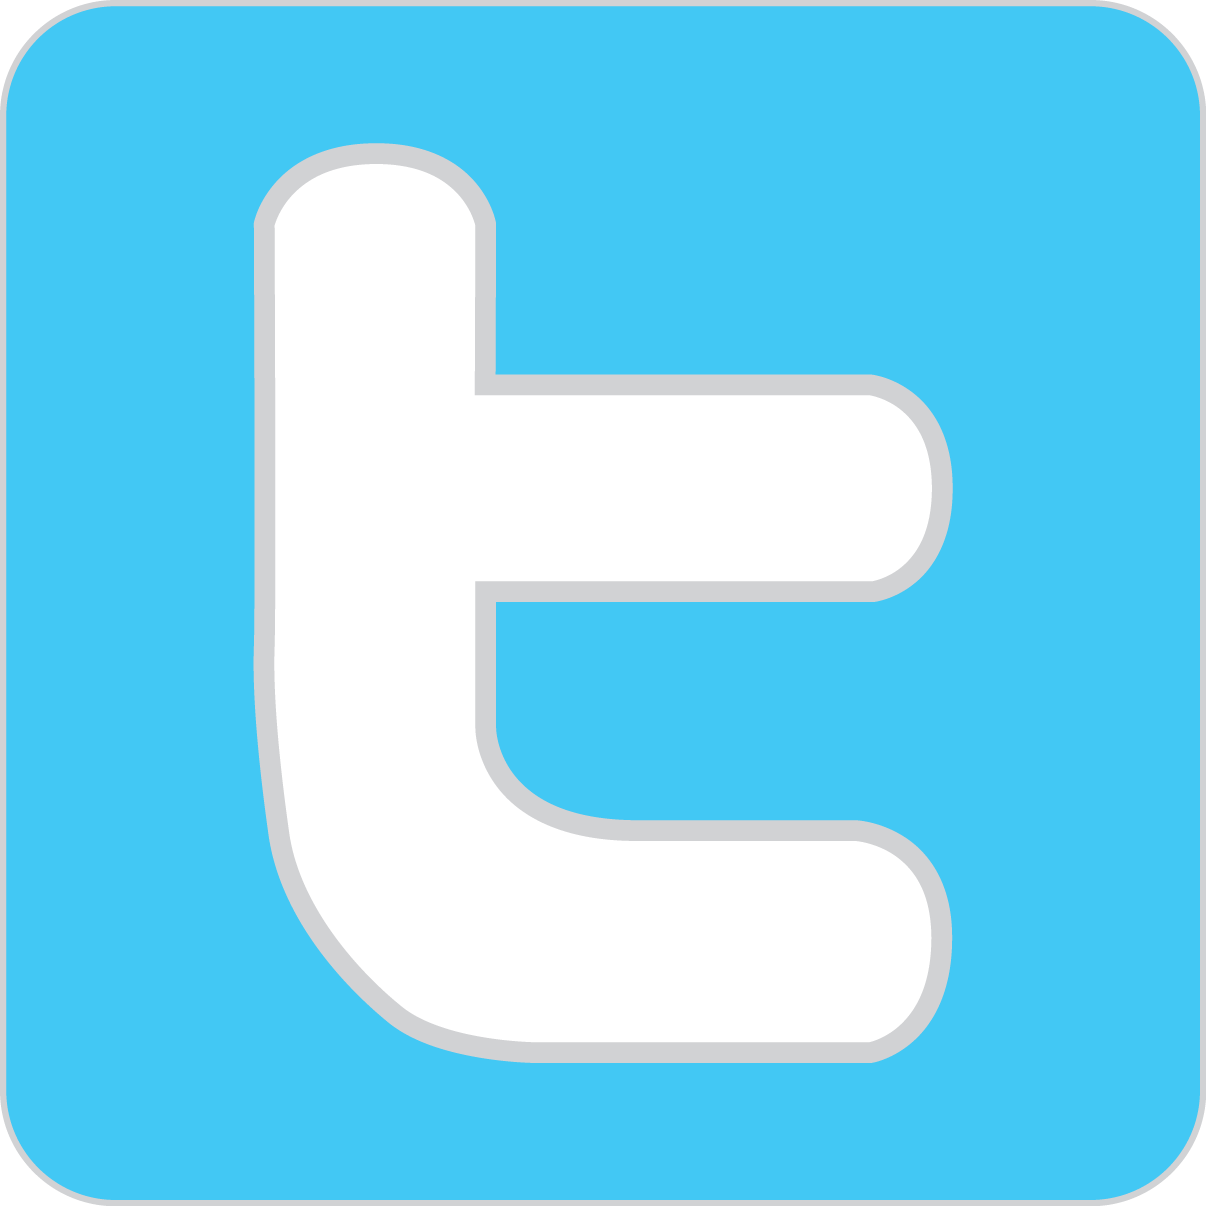 Modern Twitter Logo - Social Media: Twitter, Pinterest, and Instagram | Amy's Healthy Baking